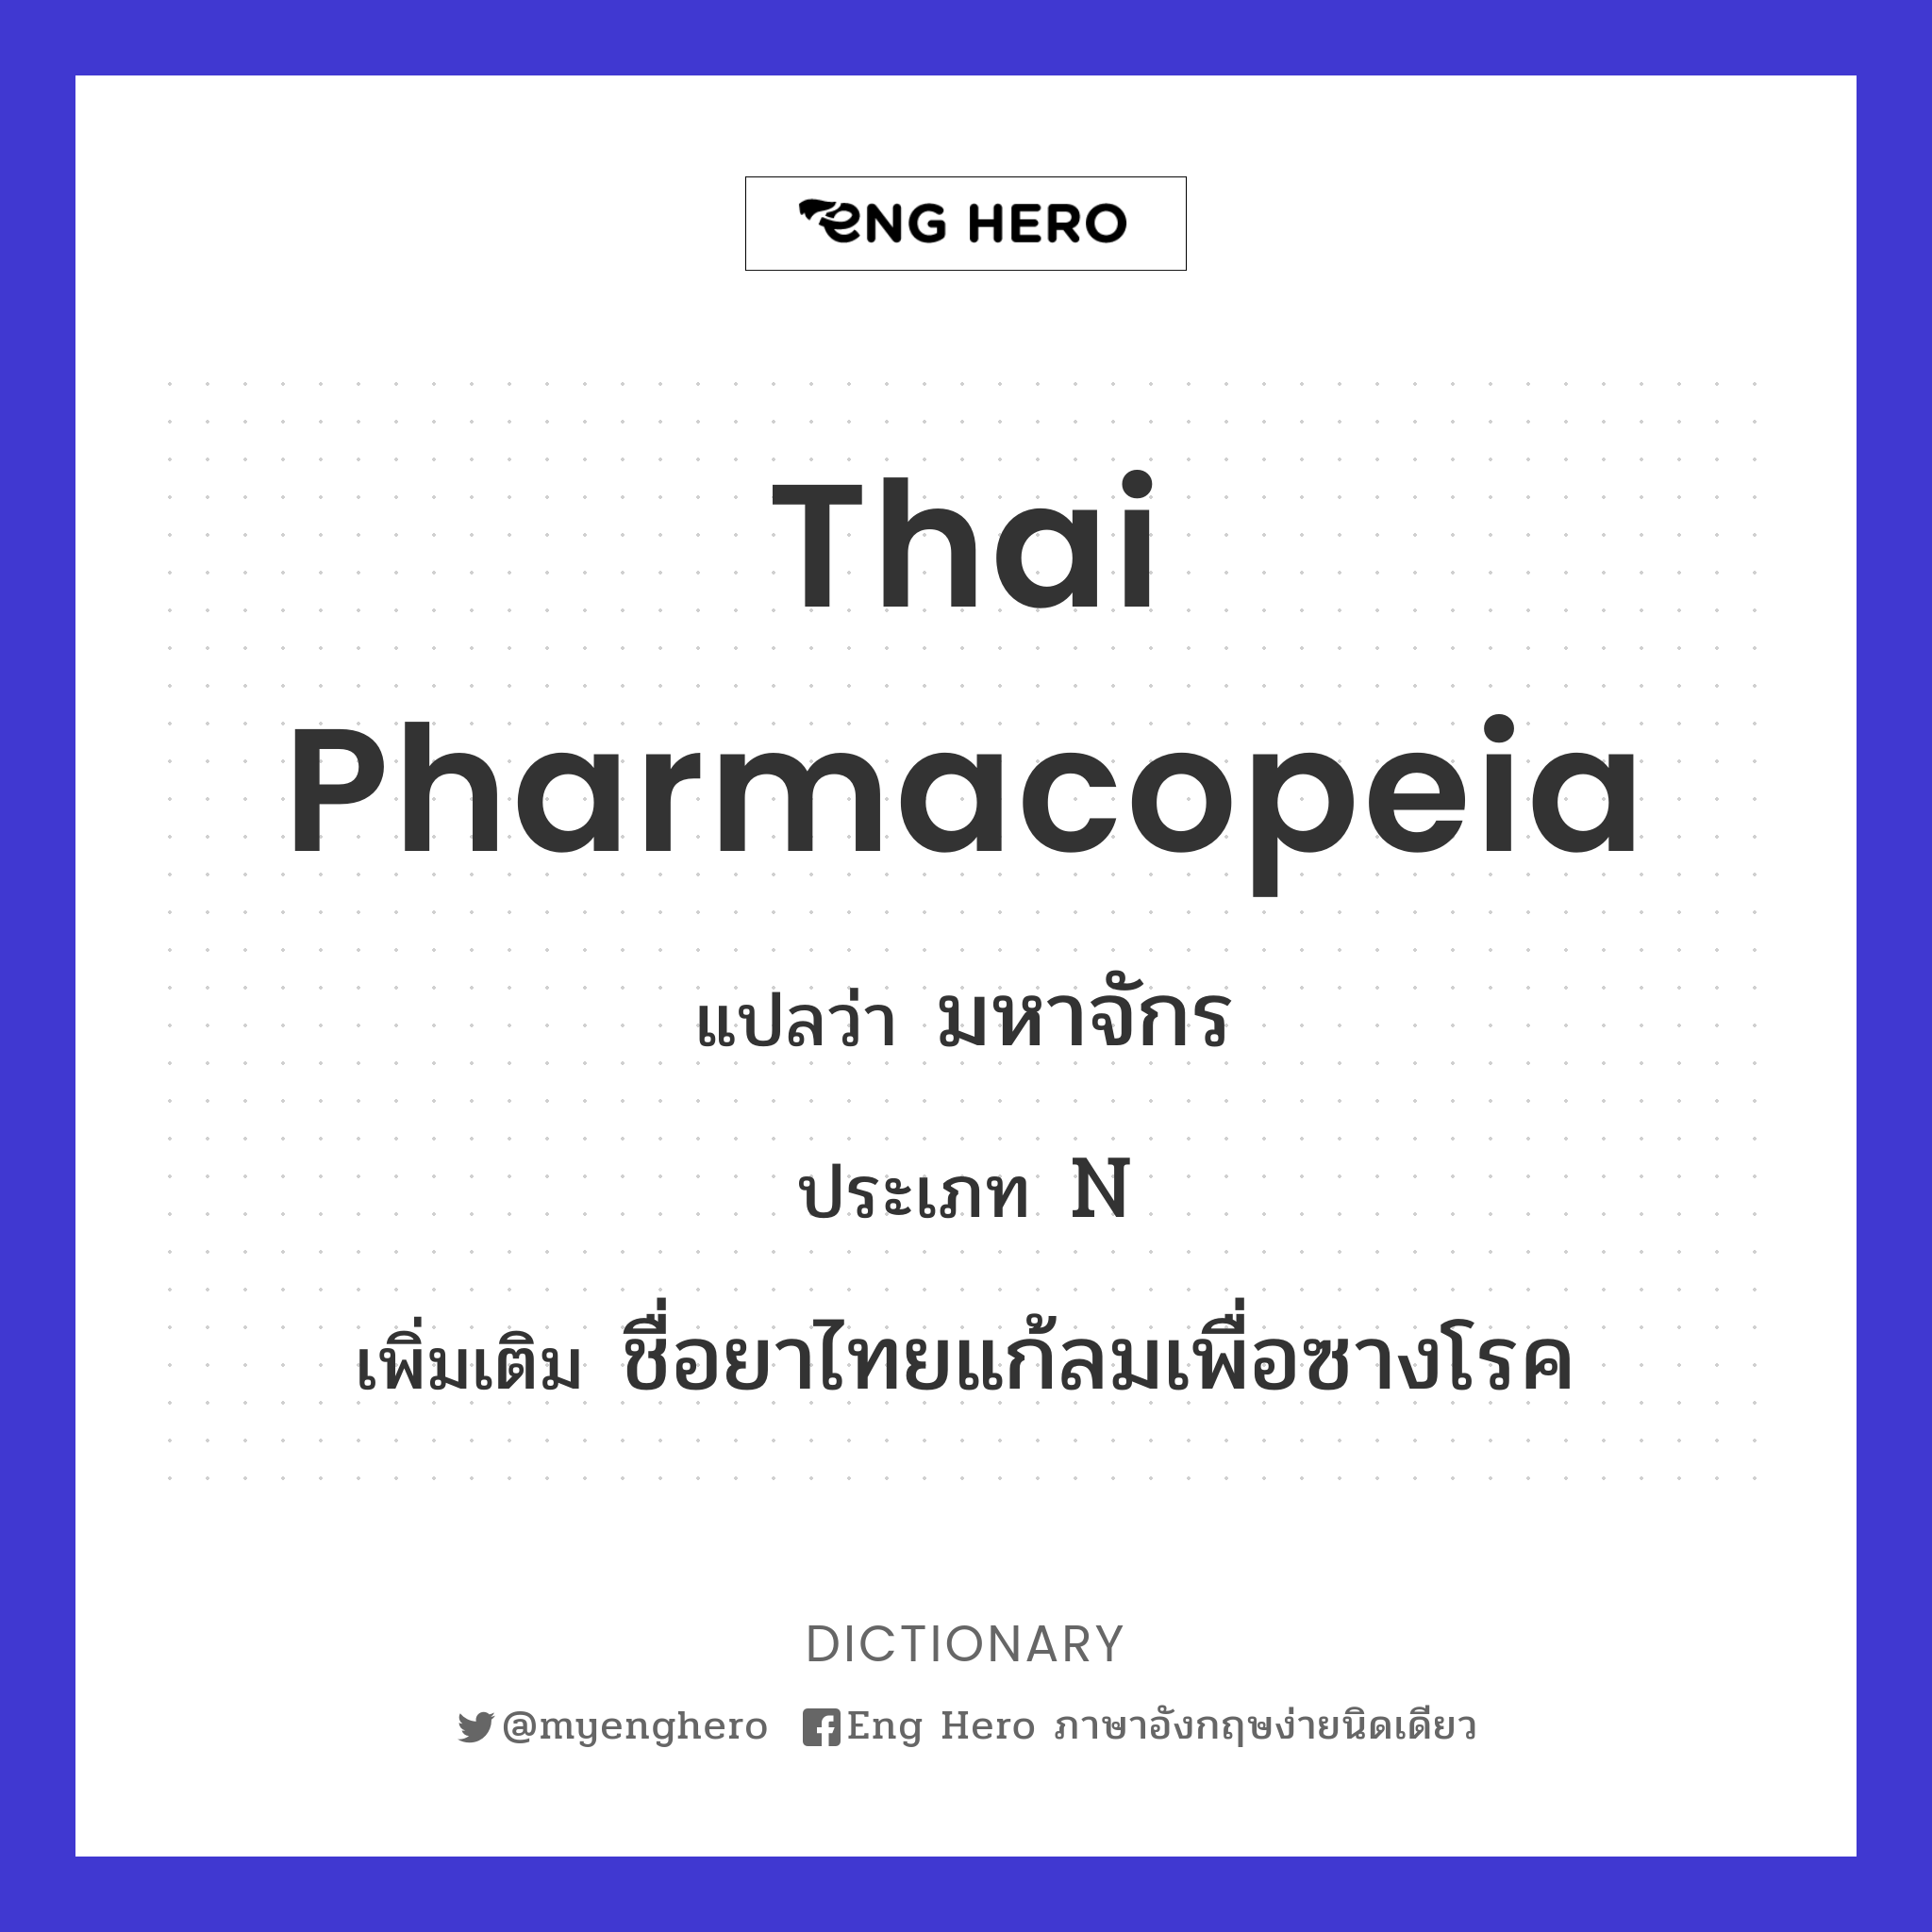 Thai pharmacopeia